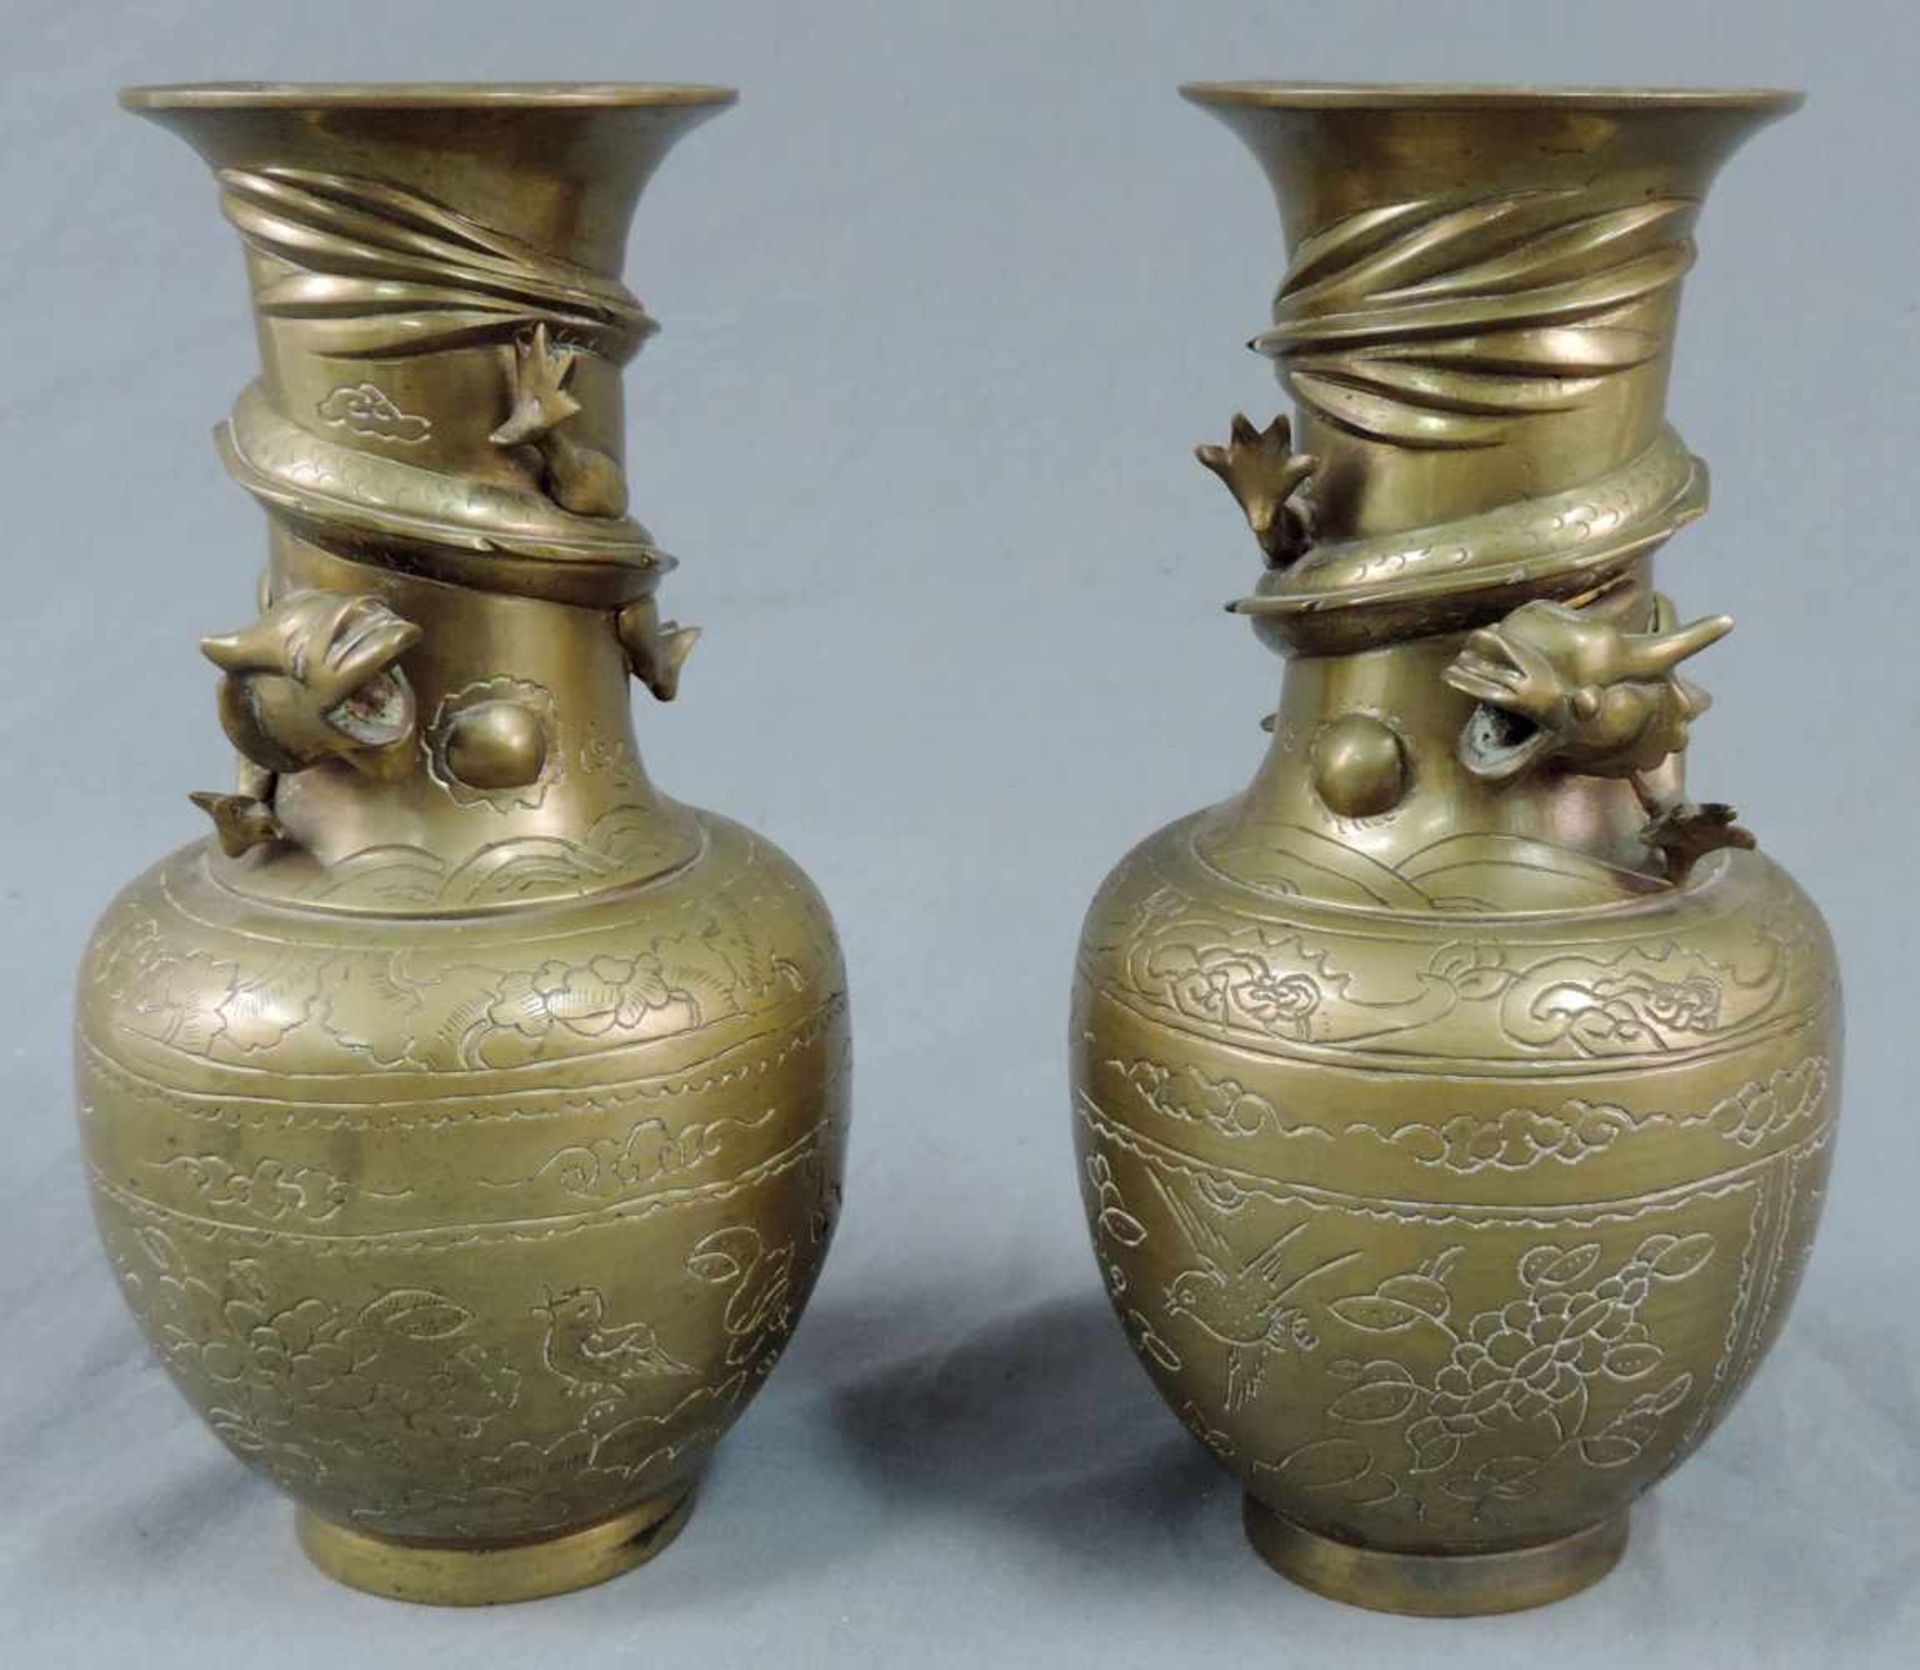 Zwei Messing / Bronze Vasen mit Drachen. China / Japan / Korea. 26 cm hoch. Two brass / bronze vases